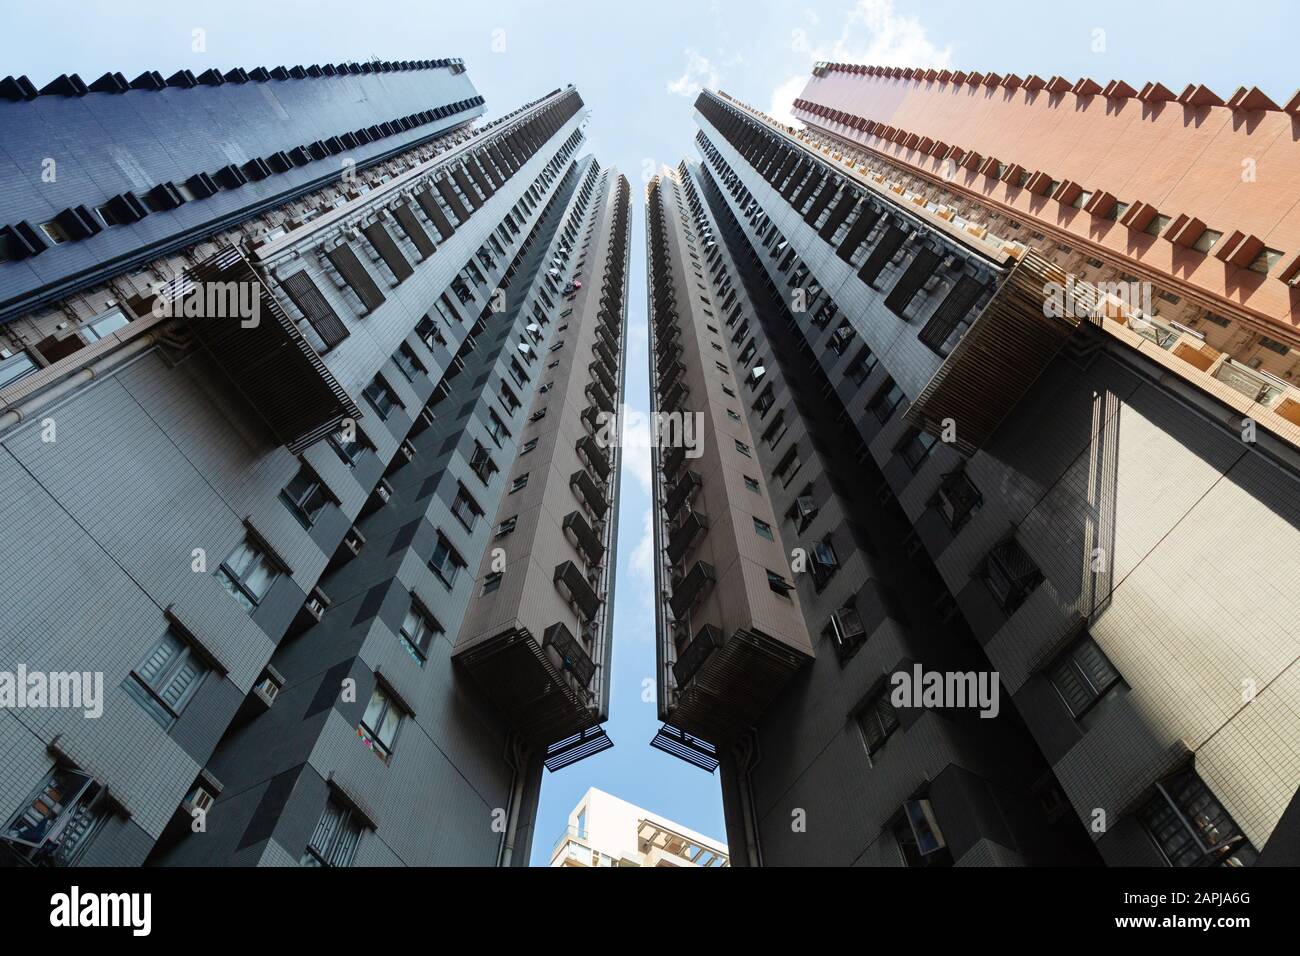 Architektur in Hongkong - Moderne Architektur Hongkong; Wolkenkratzer in Soho, Central District mit Symmetrie, Hong Kong Island, Hong Kong Asia Stockfoto